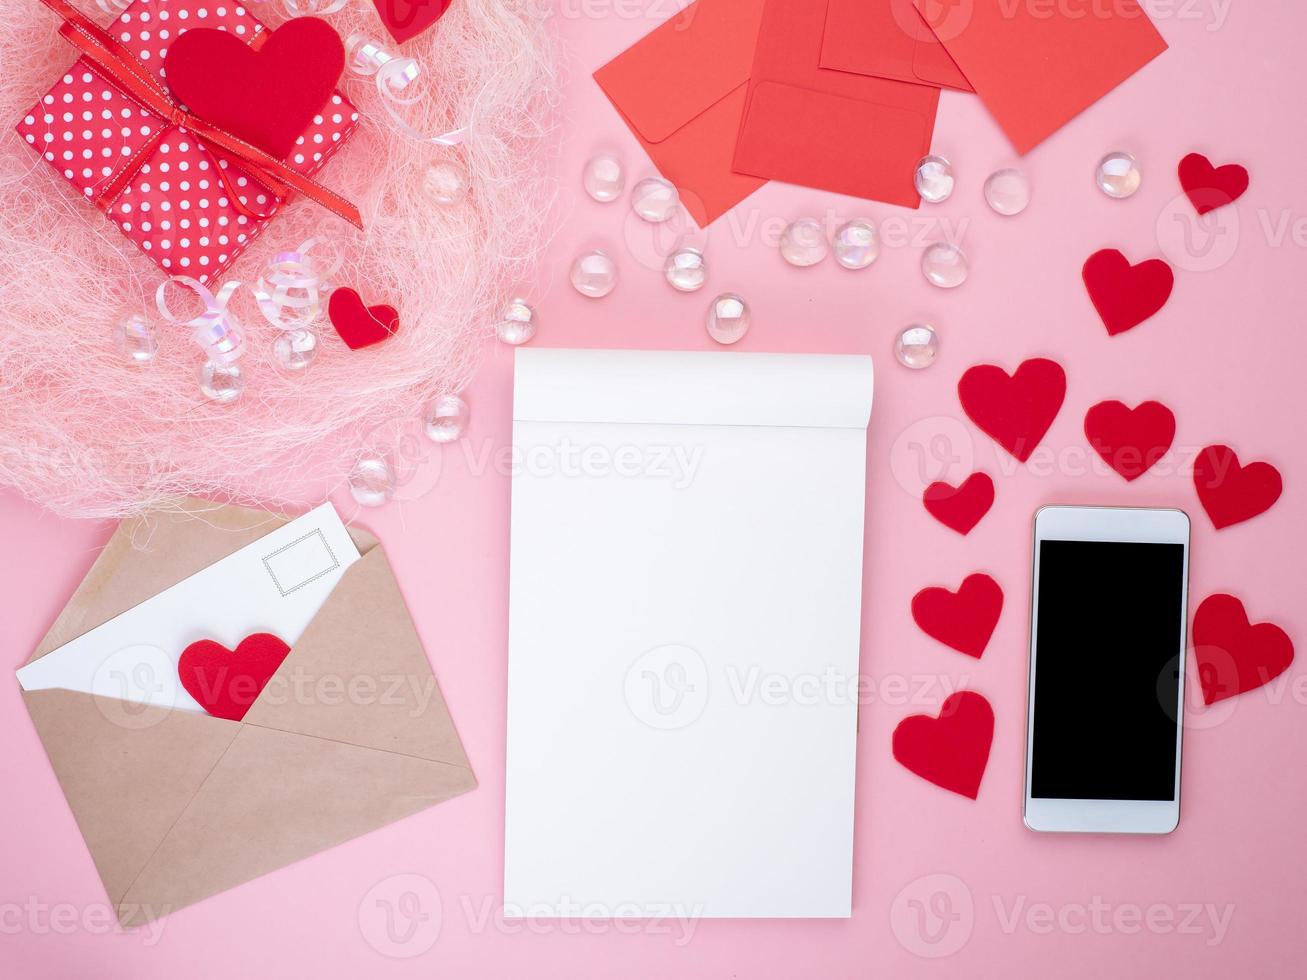 cadeau dans une boîte cadeau rouge avec noeud, bloc-notes, téléphone intelligent, enveloppe, carte, coeur rouge, fond rose, plat, espace pour copie photo